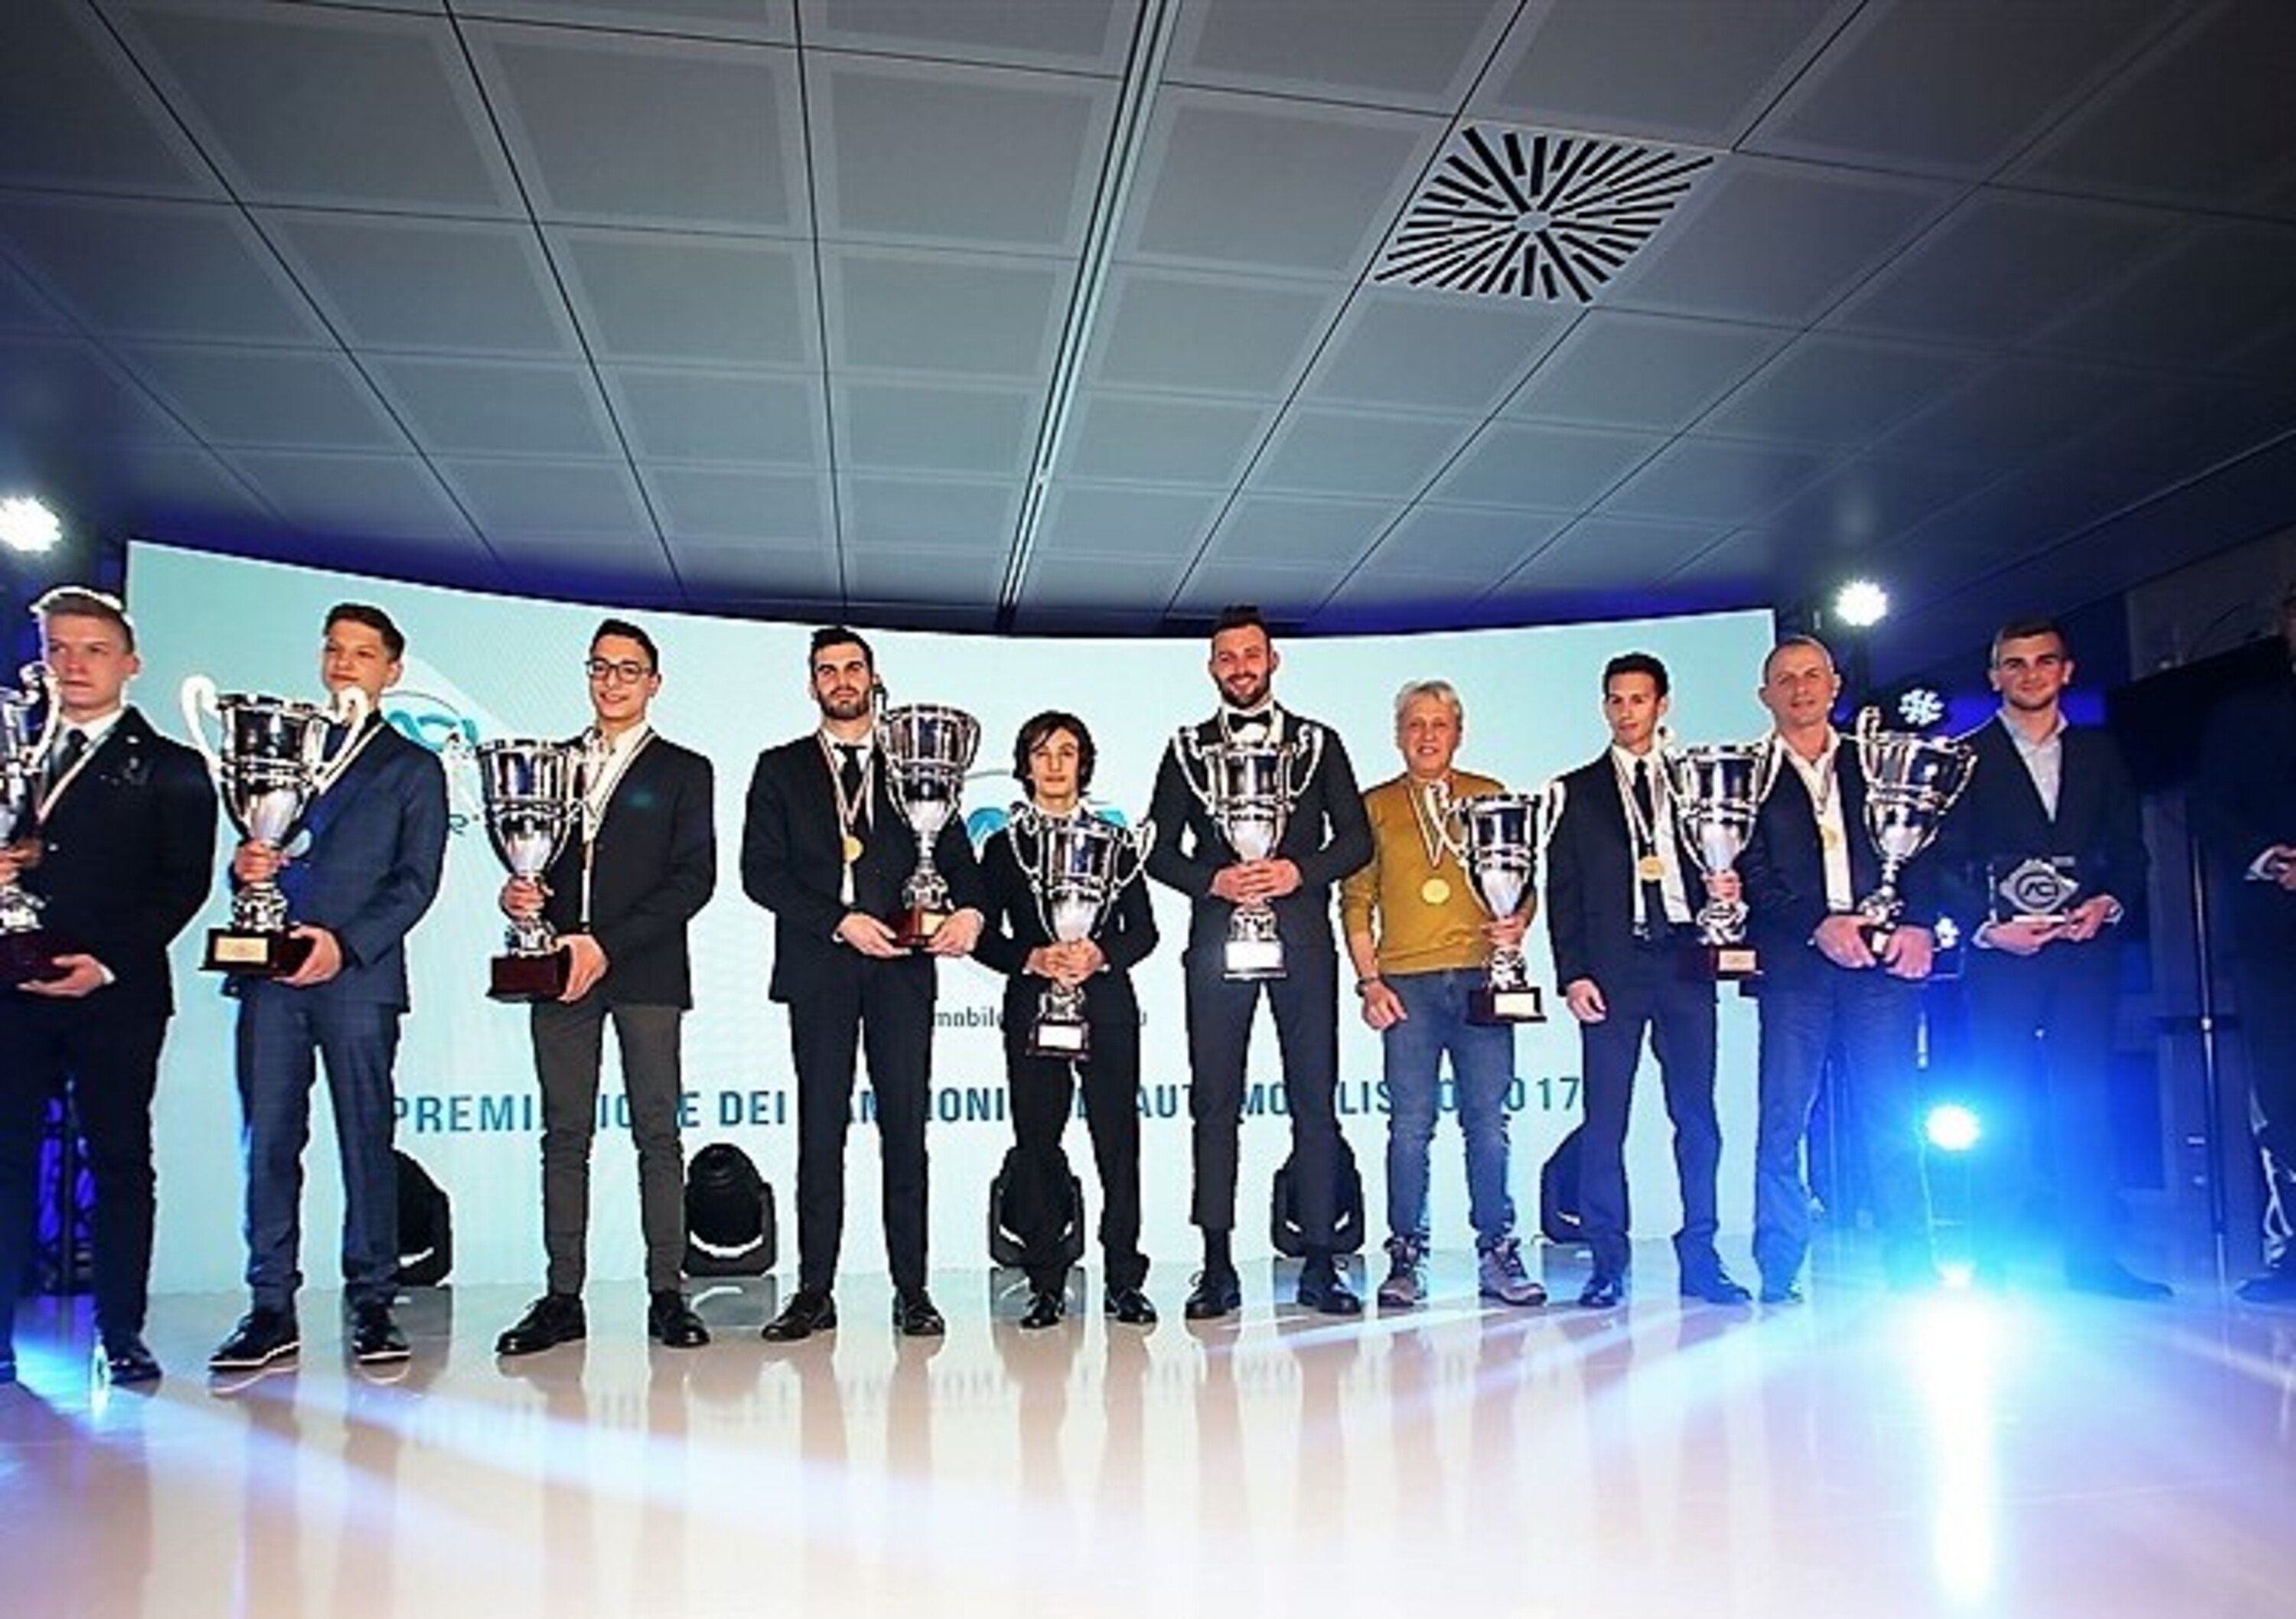 Premiazione Campioni ACI 2017, Monza